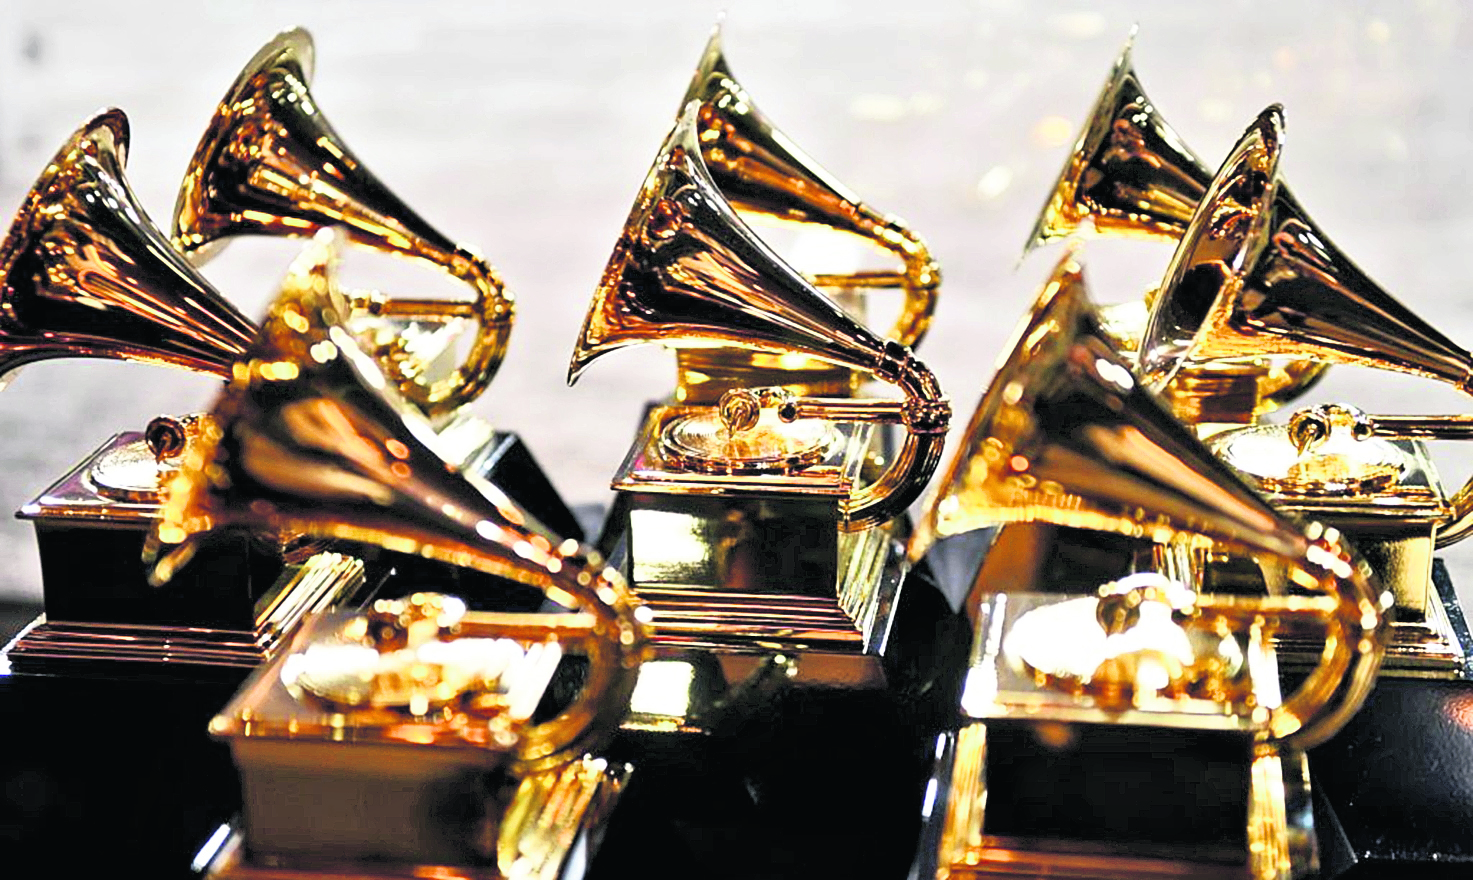 La gala anual de los Latin Grammy se realizará el 18 de noviembre del 2021. (Foto Prensa Libre: Don EMMERT / AFP).